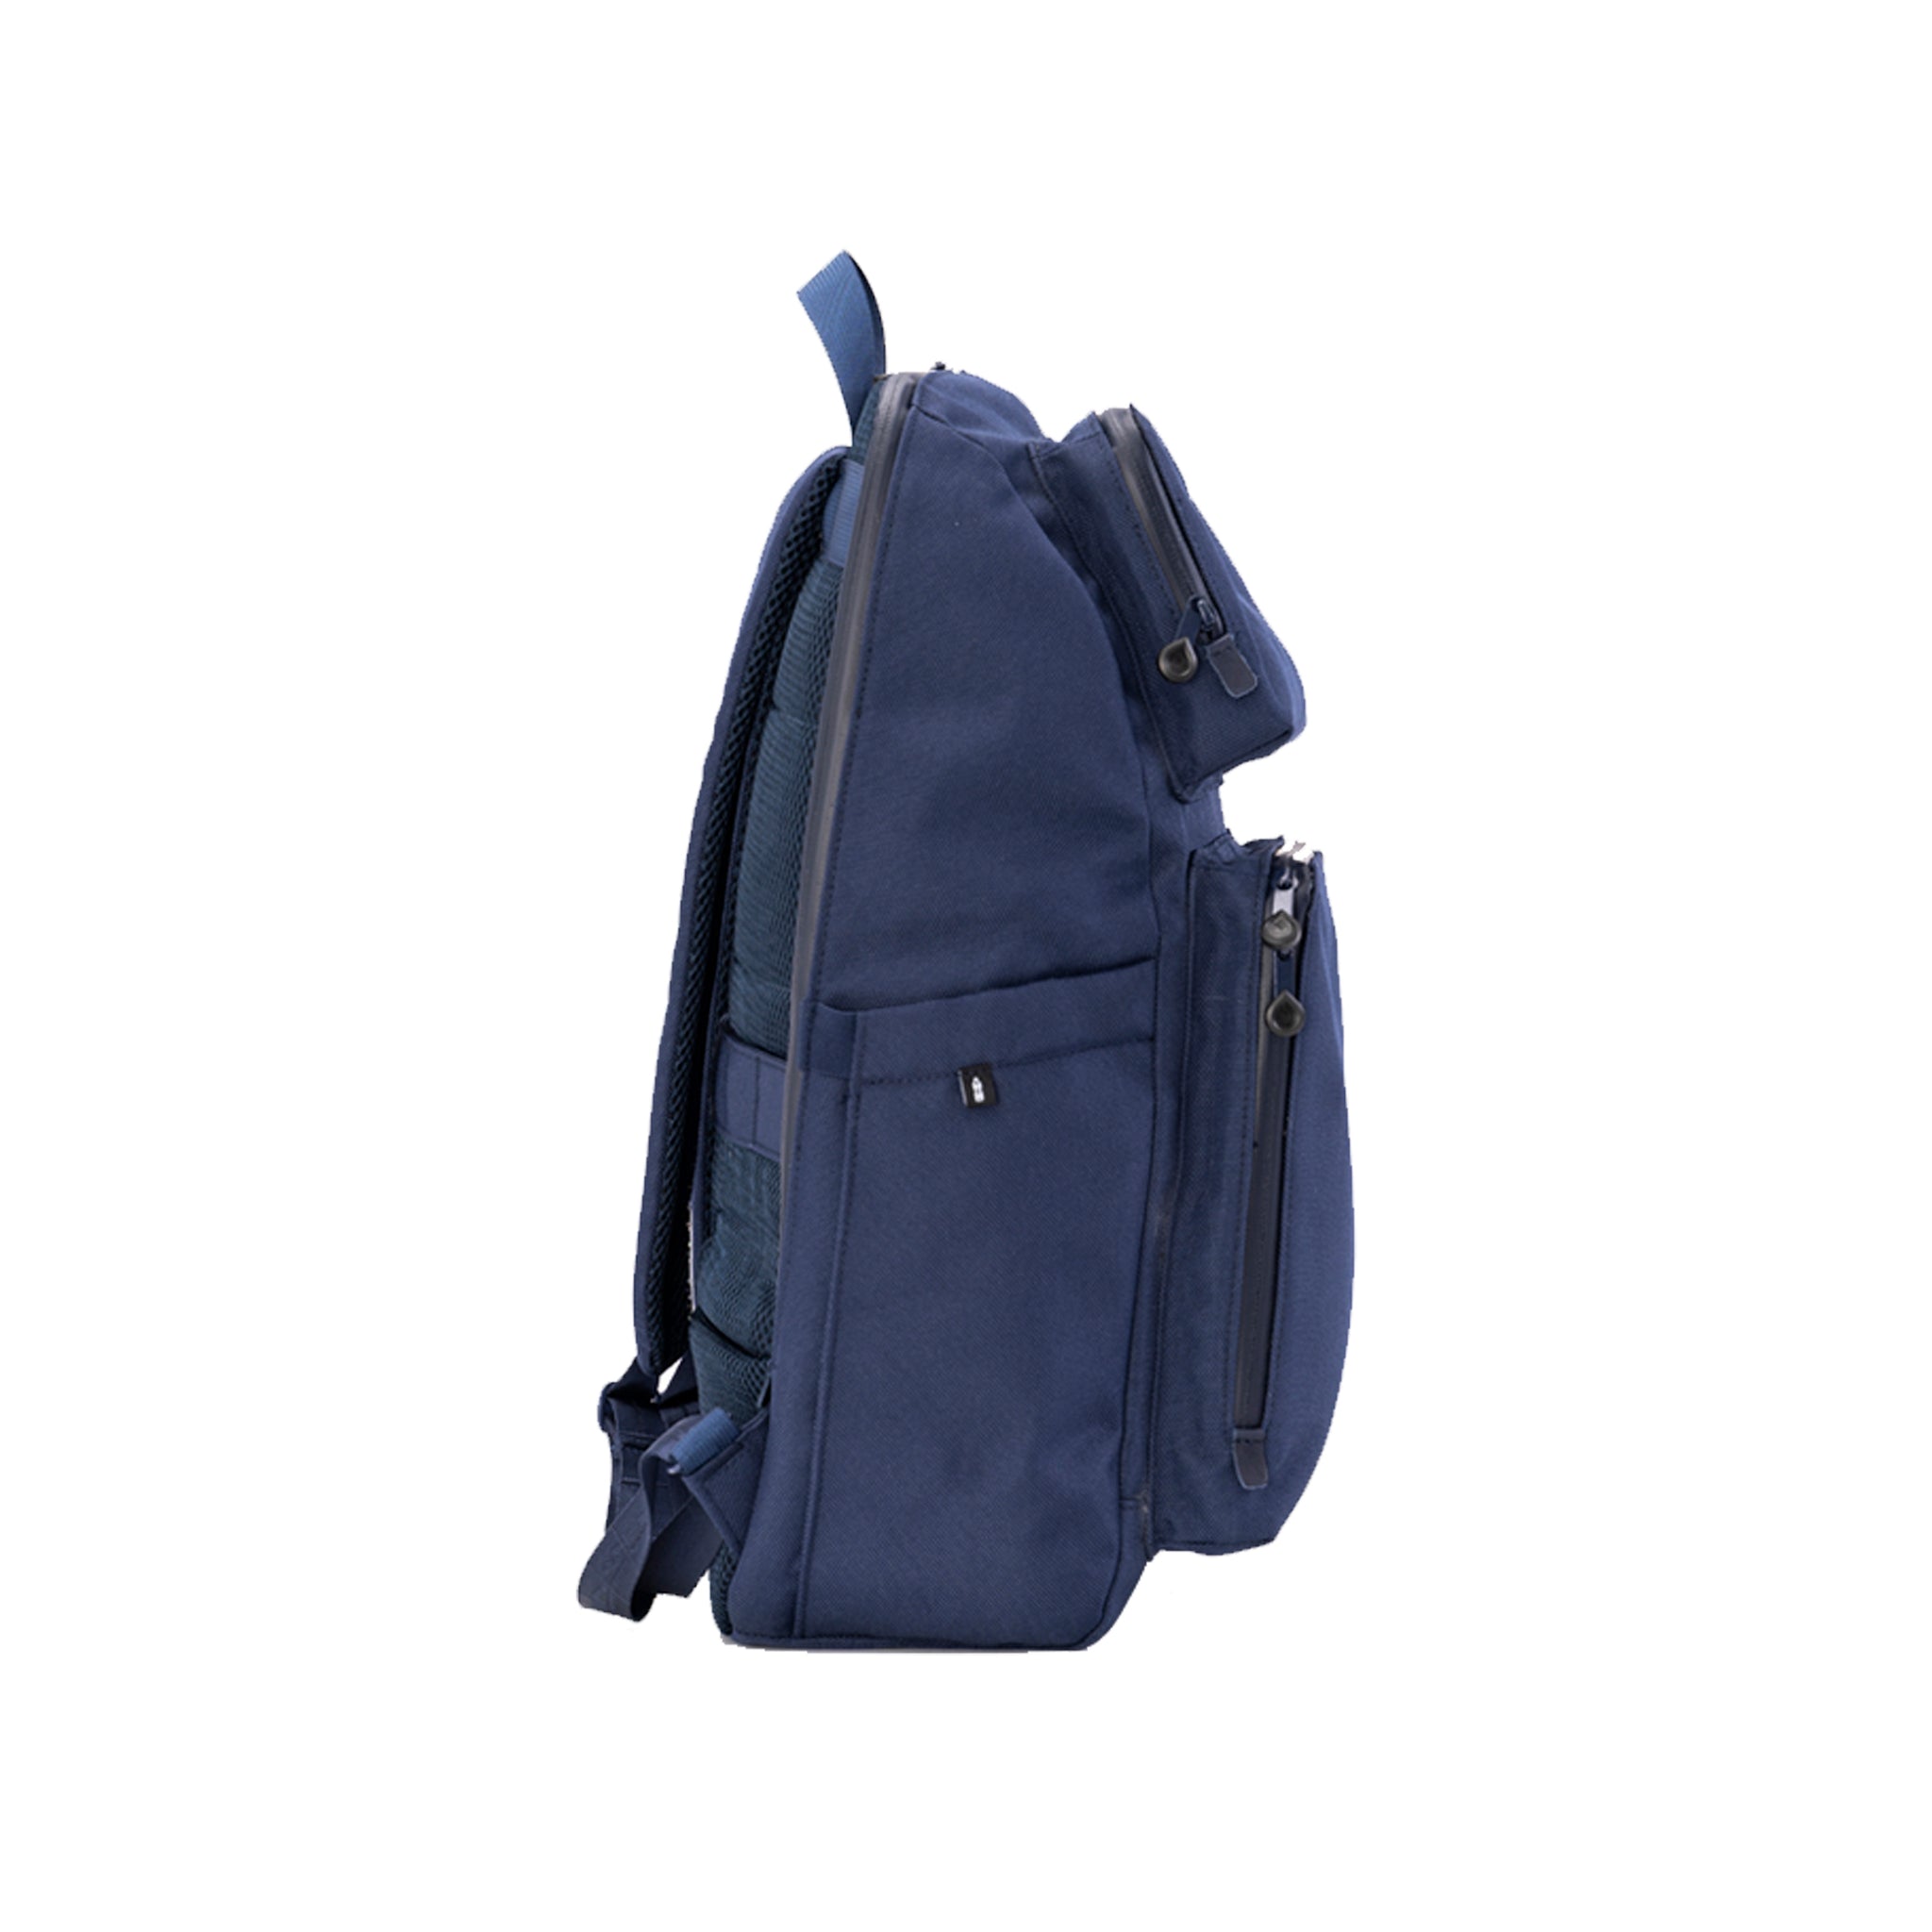 MUB Bibi Regular - Classic Blue Multi-functional Bag for Men